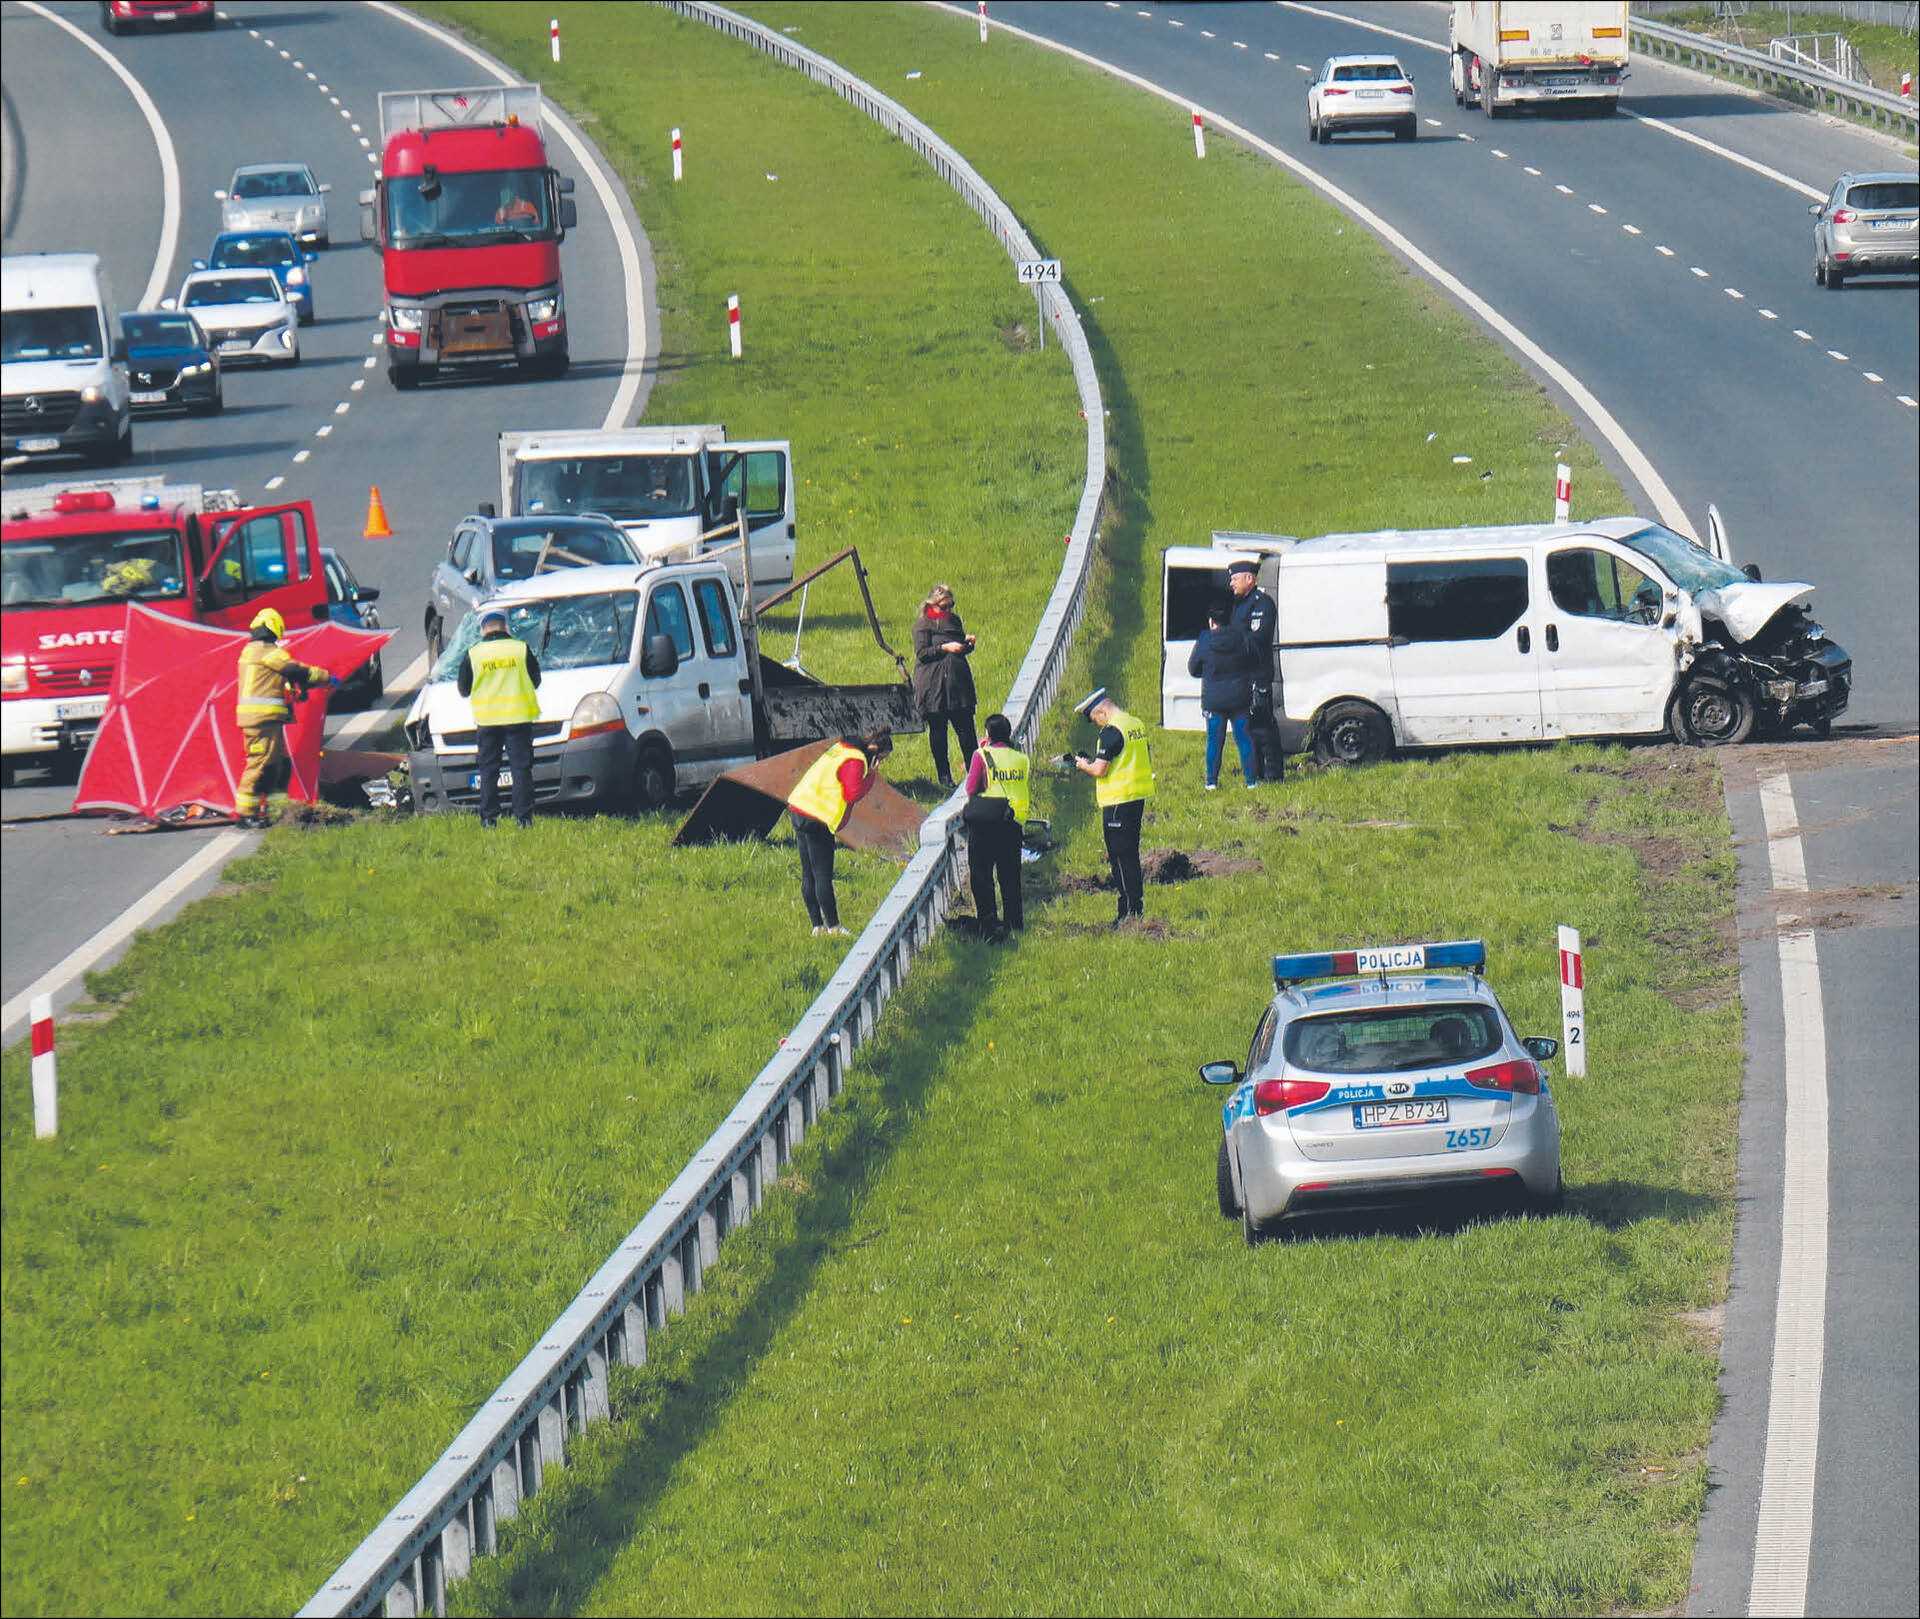 Specjaliści proponują ograniczenie dopuszczalnej prędkości na polskich autostradach